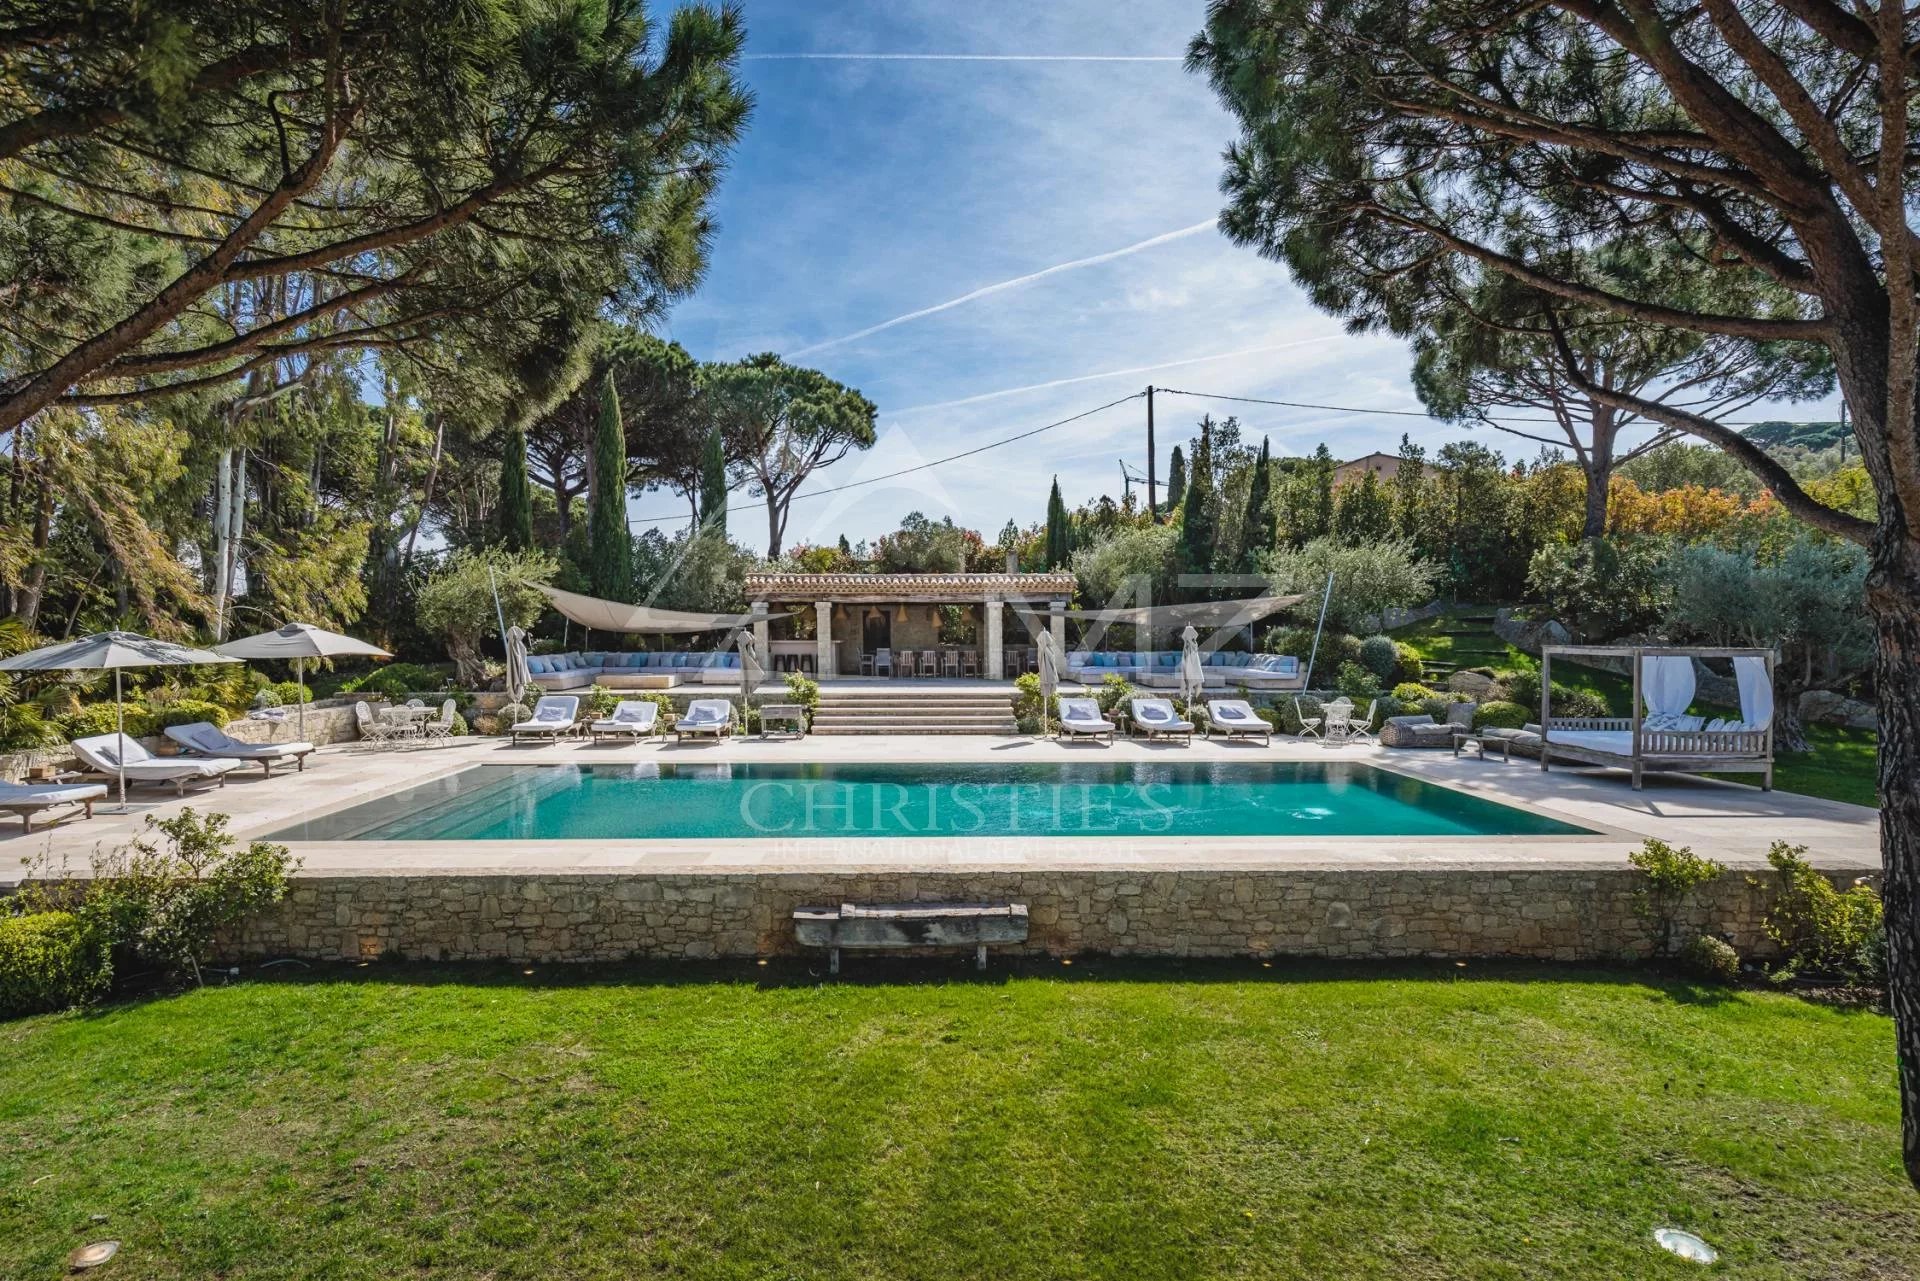 Saint-Tropez - Sublime villa near the city center